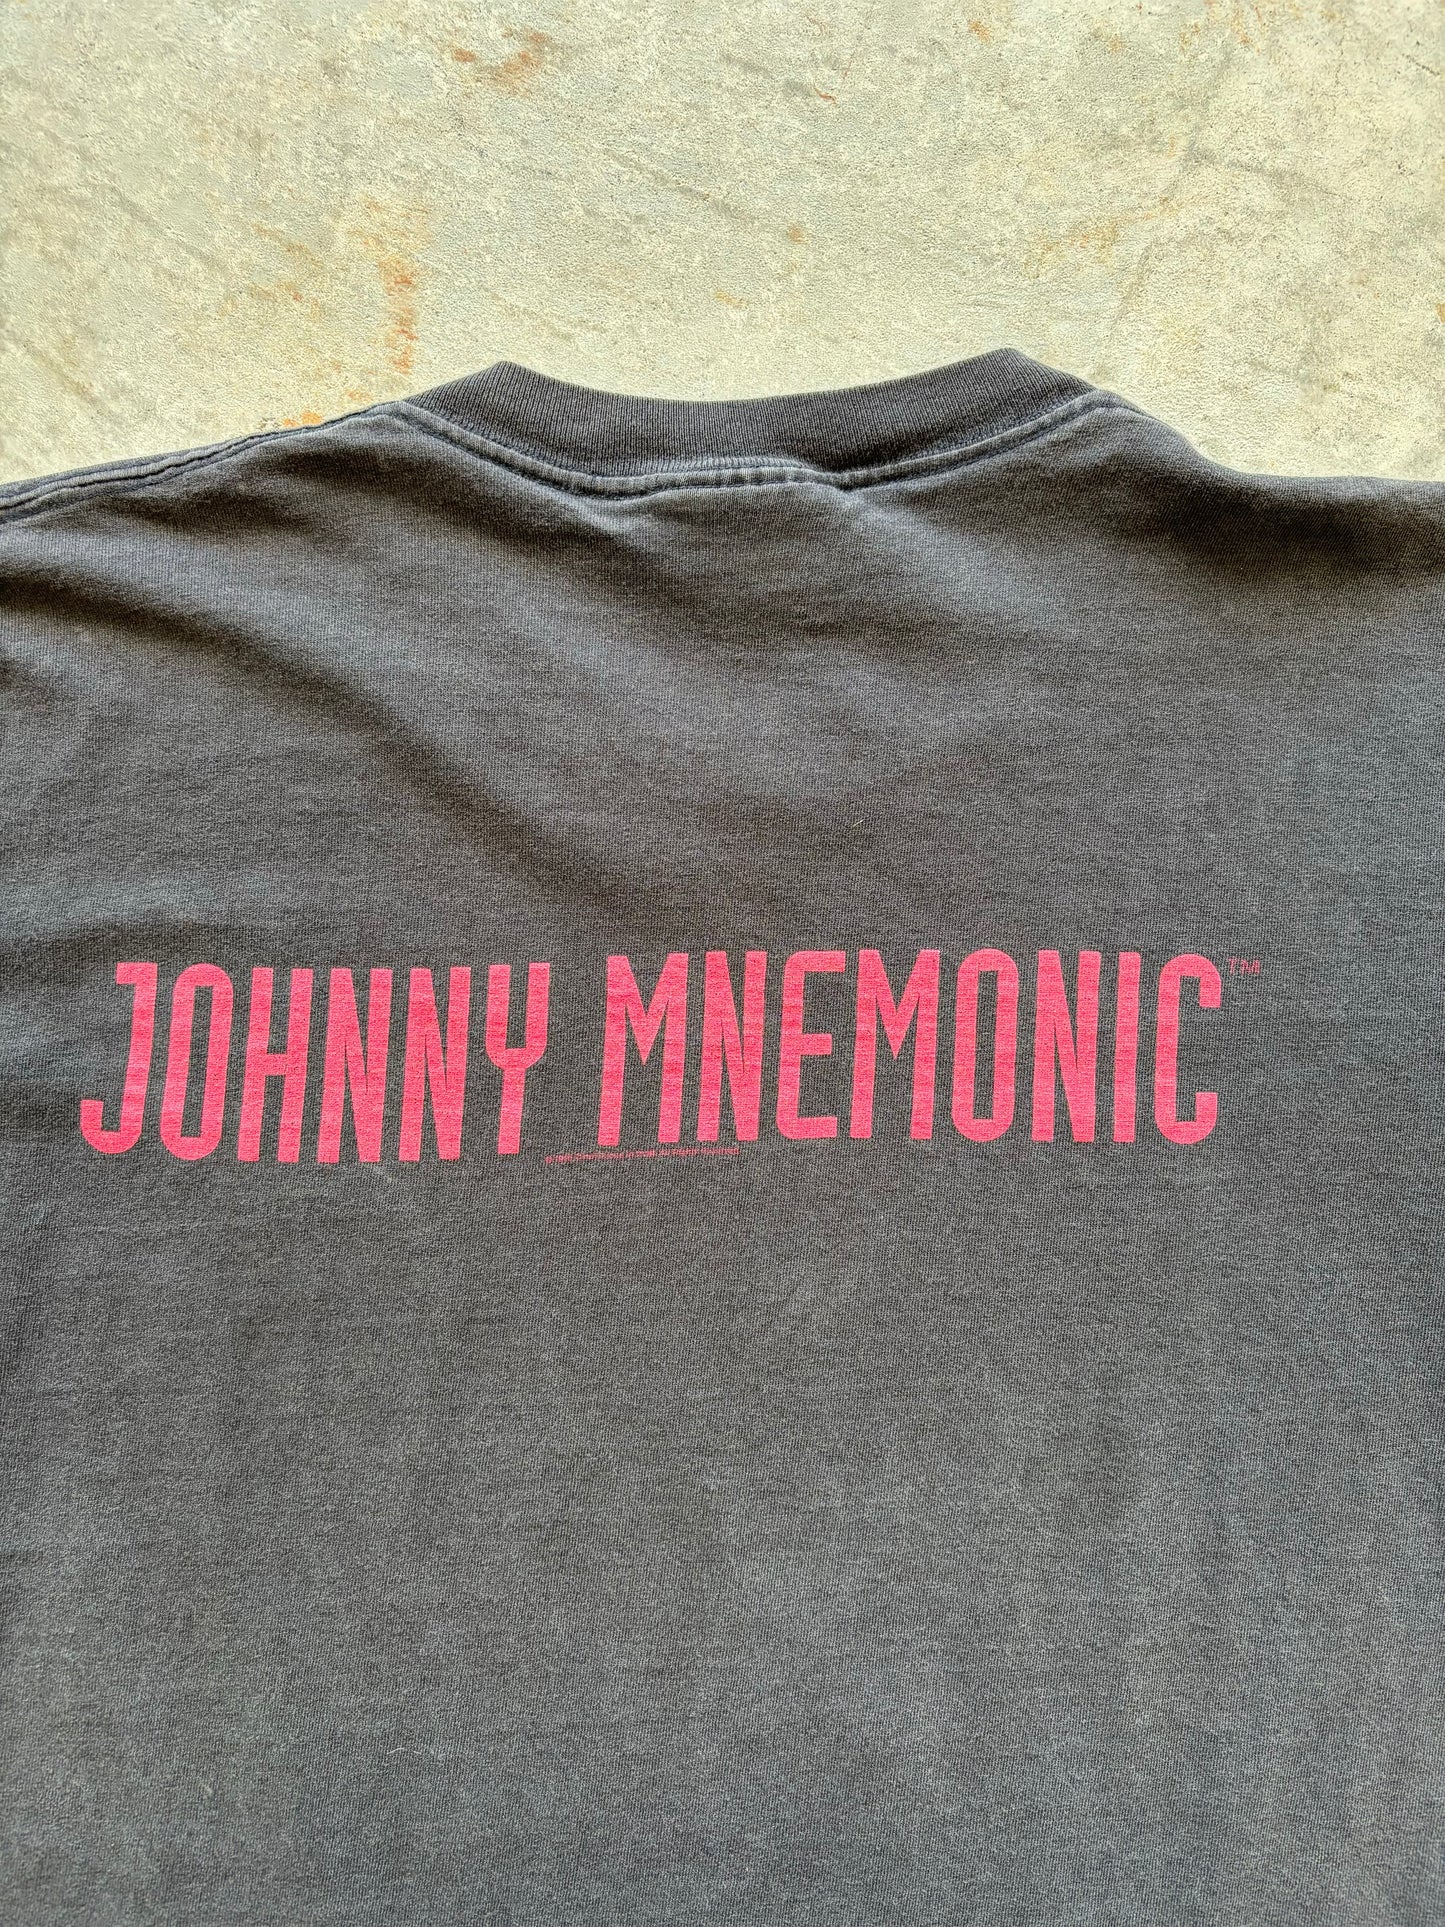 1995 Johnny Mnemonic Movie Promo Tee Size Large